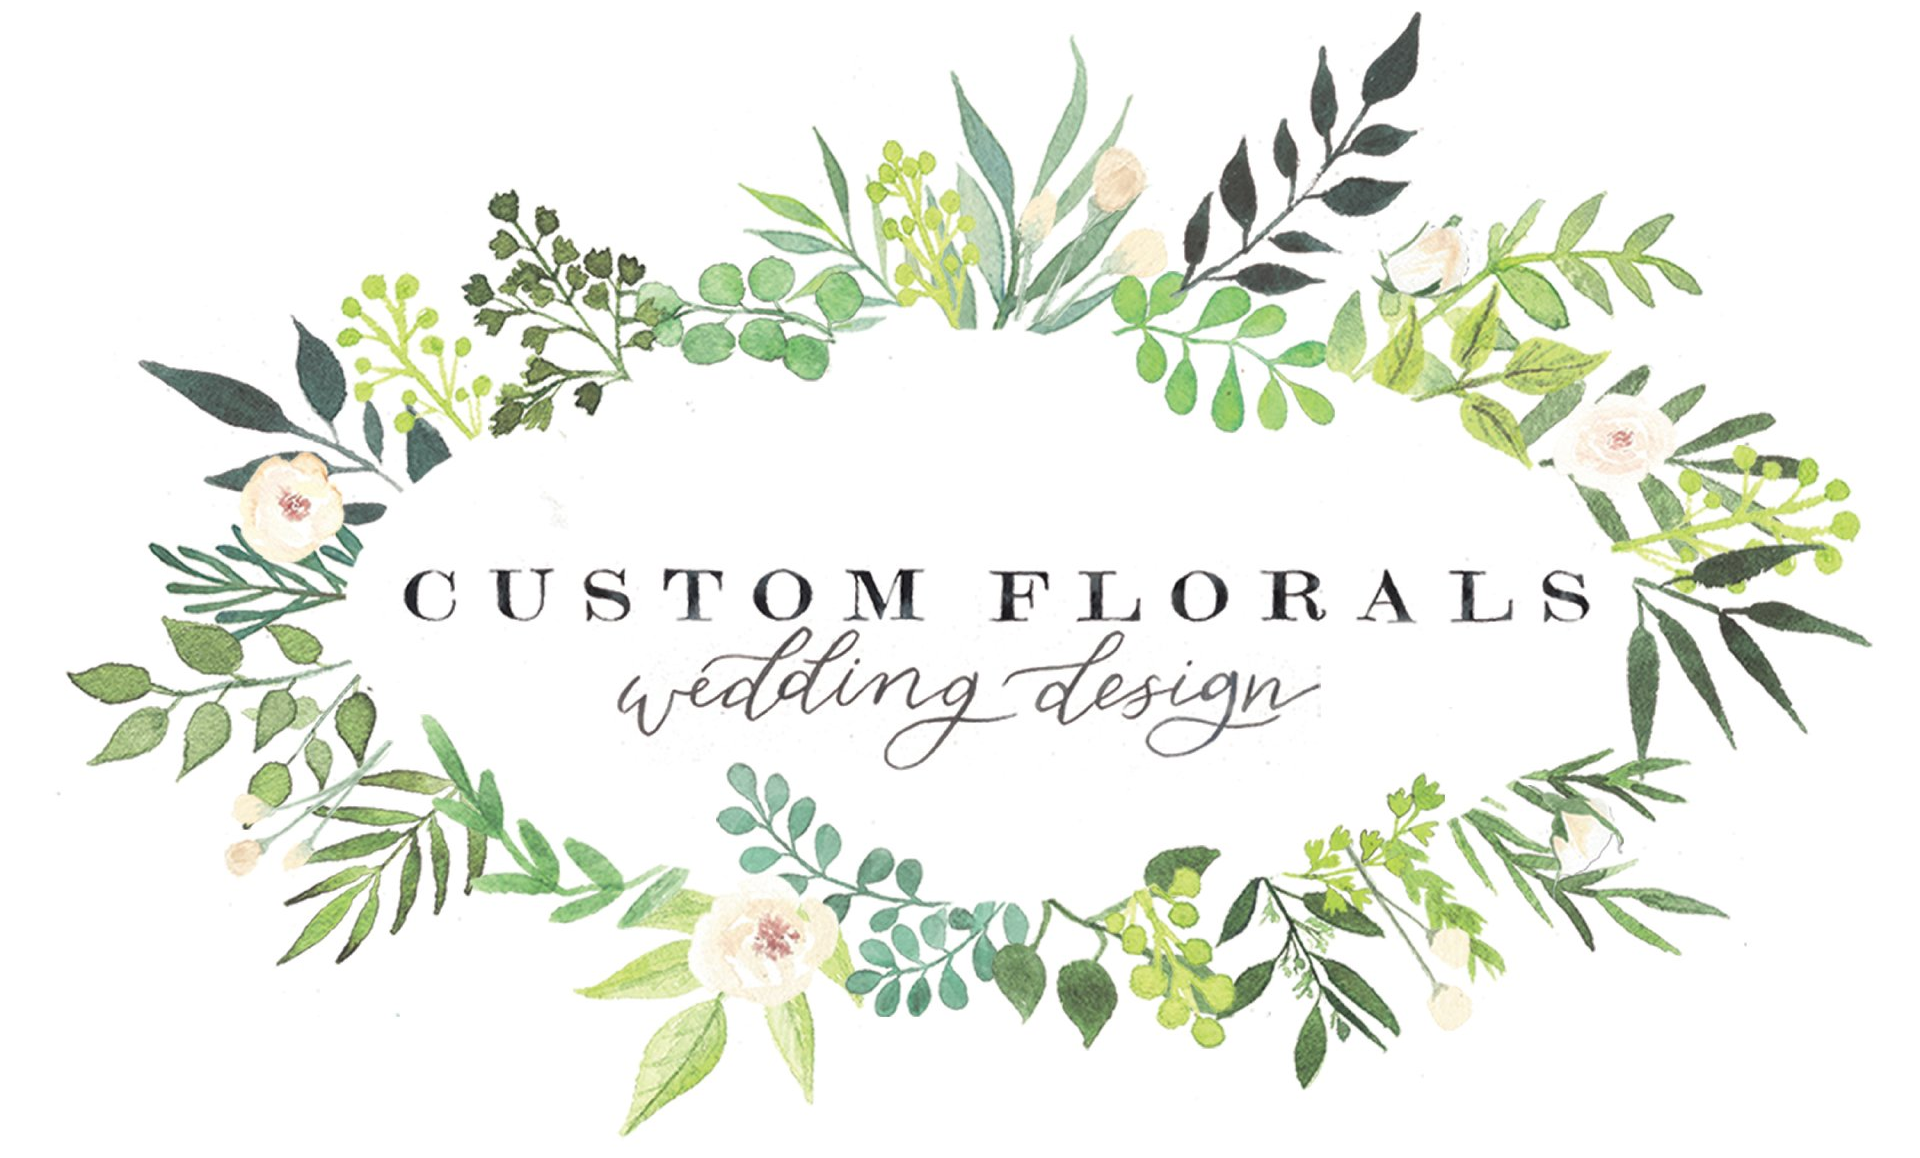 Custom Florals, Lancaster PA's Premier Wedding Florist